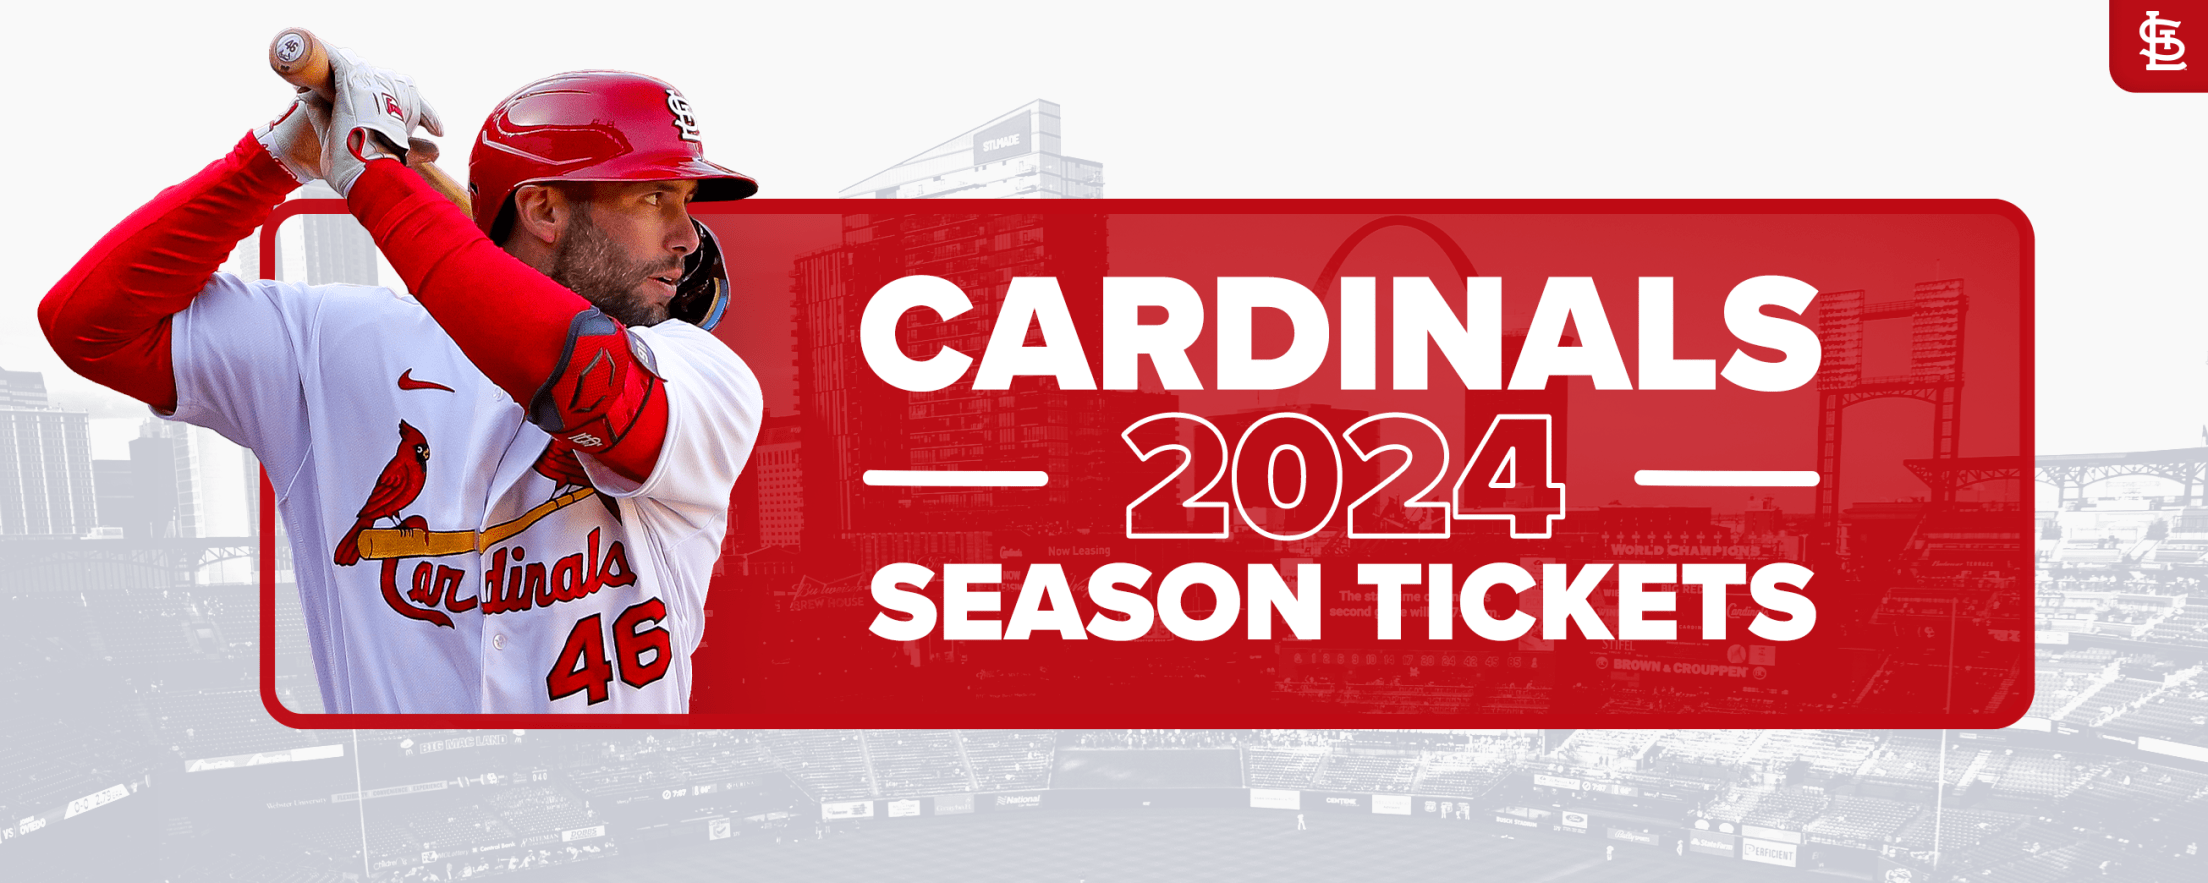 preseason tickets cardinals